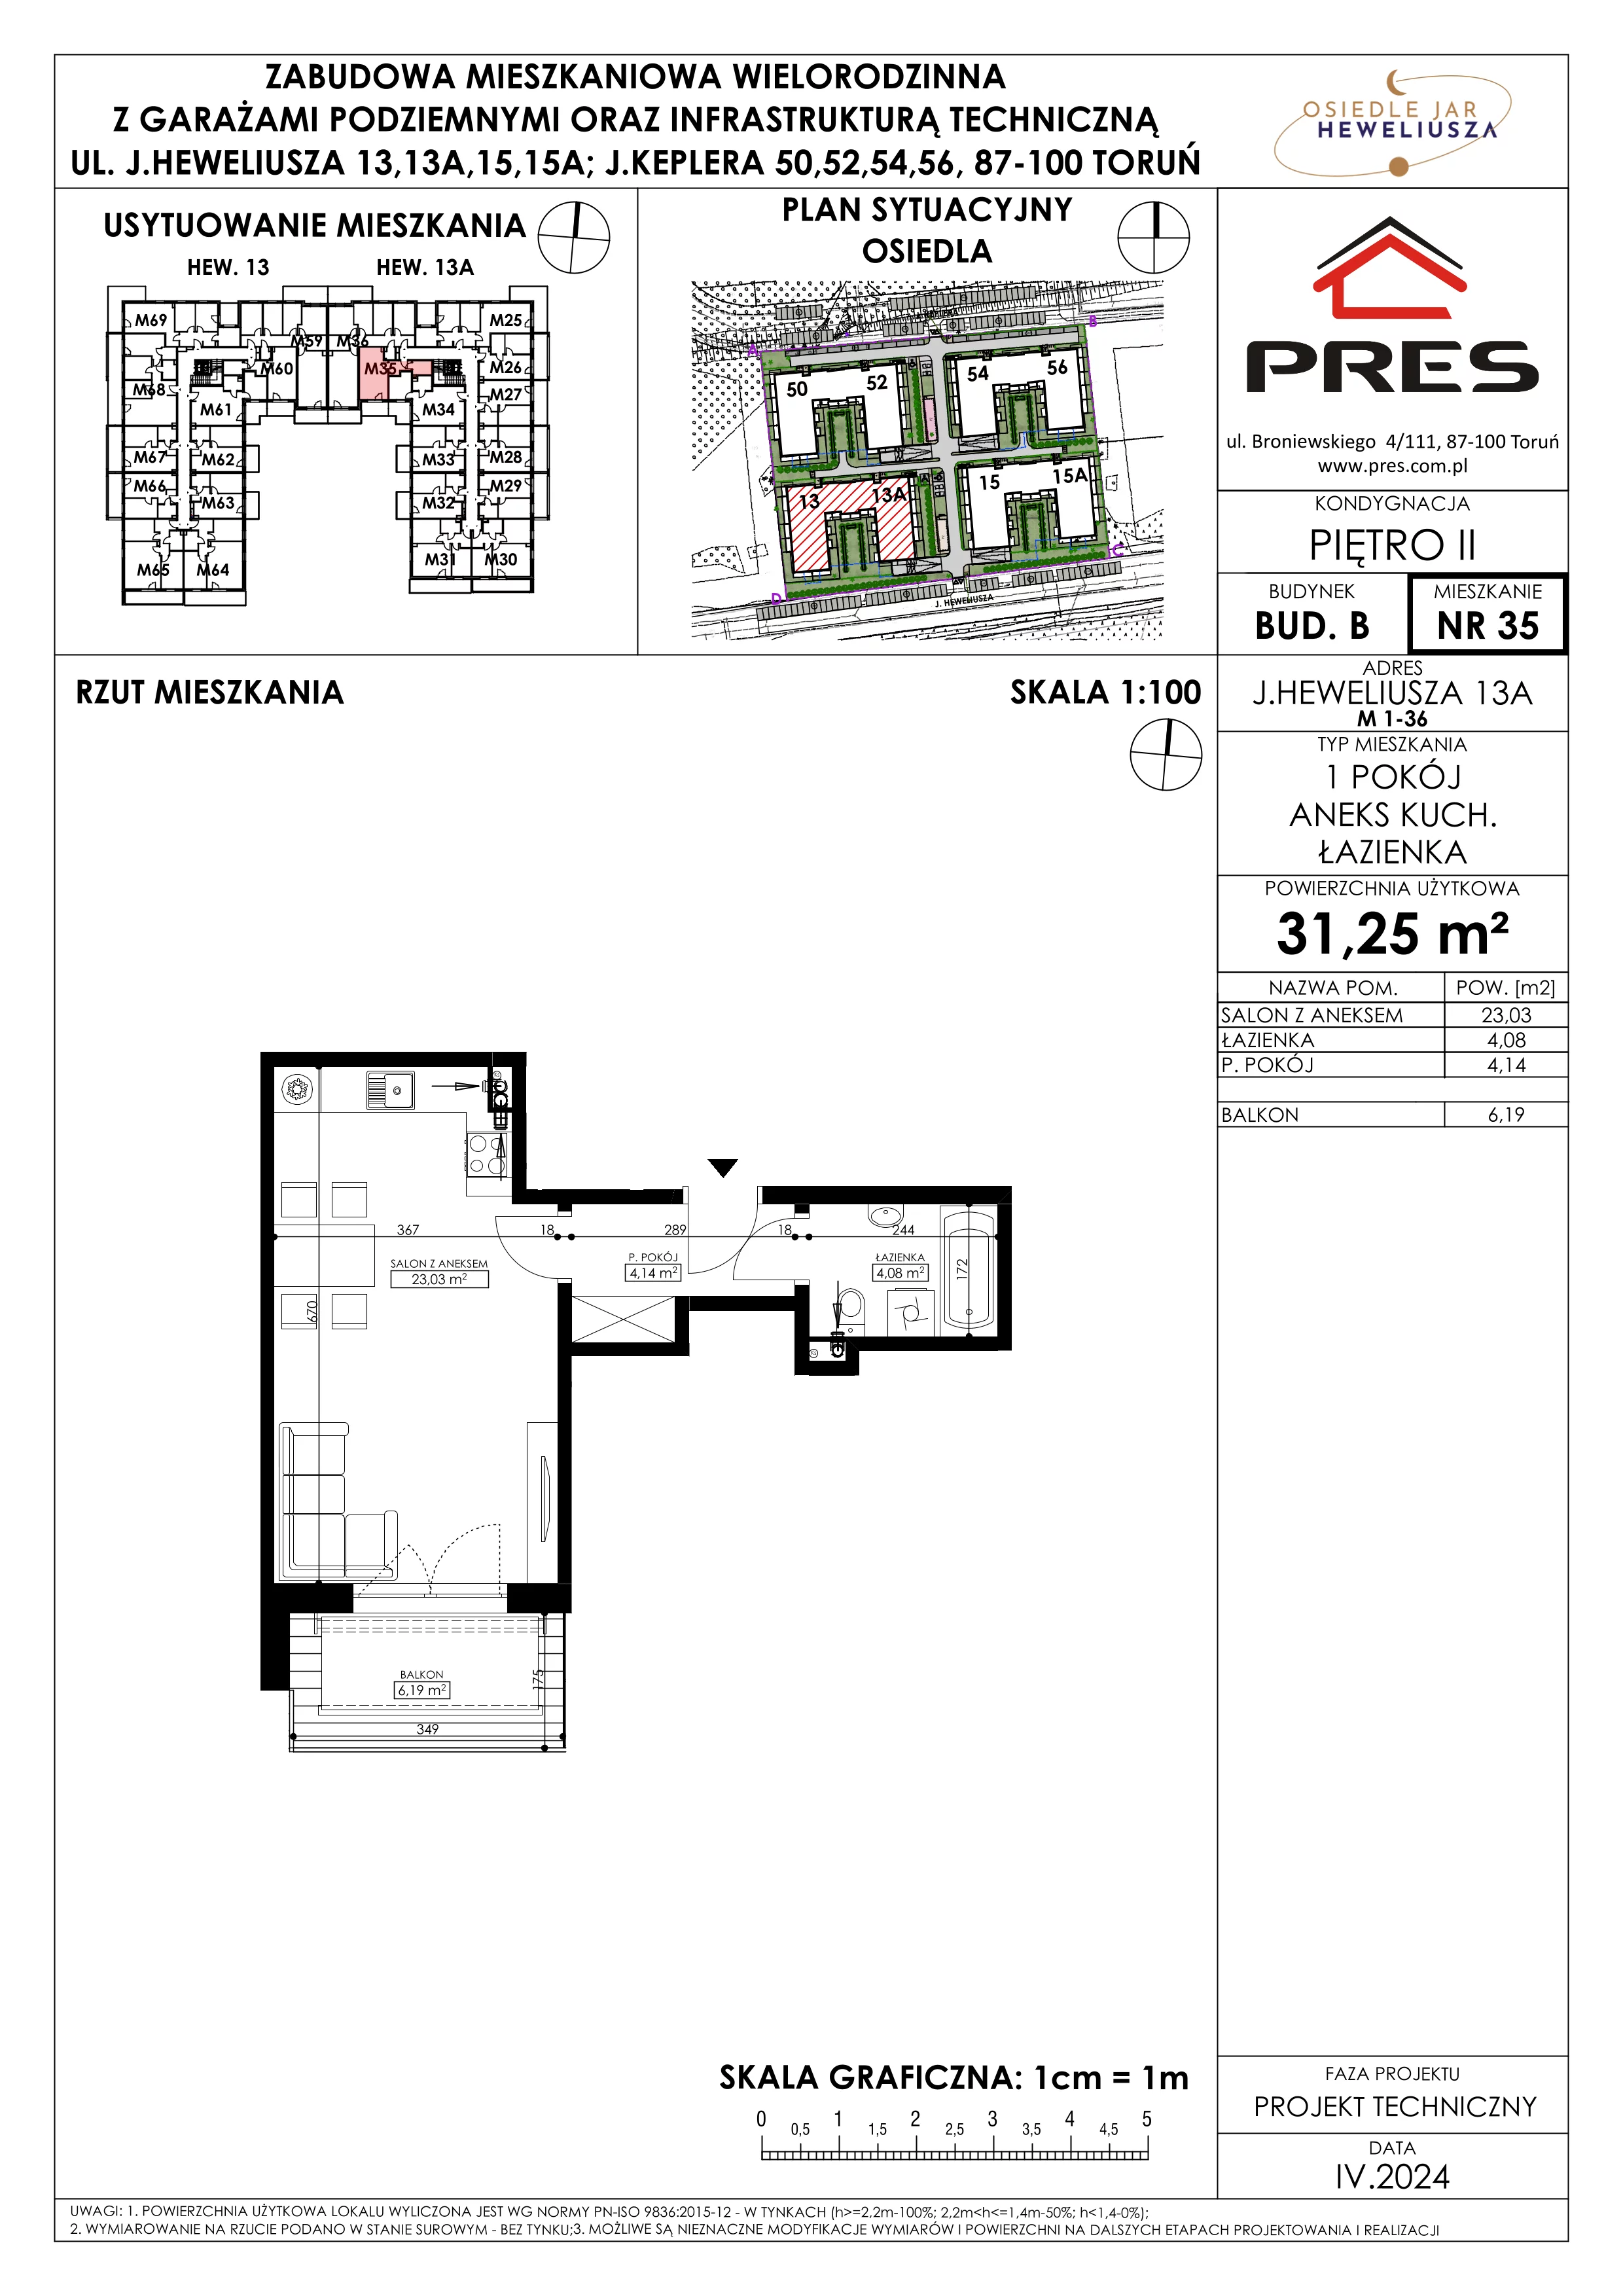 Mieszkanie 31,25 m², piętro 2, oferta nr 35, Osiedle JAR Heweliusza - Etap II, Toruń, Wrzosy, JAR, ul. Heweliusza 13-15A